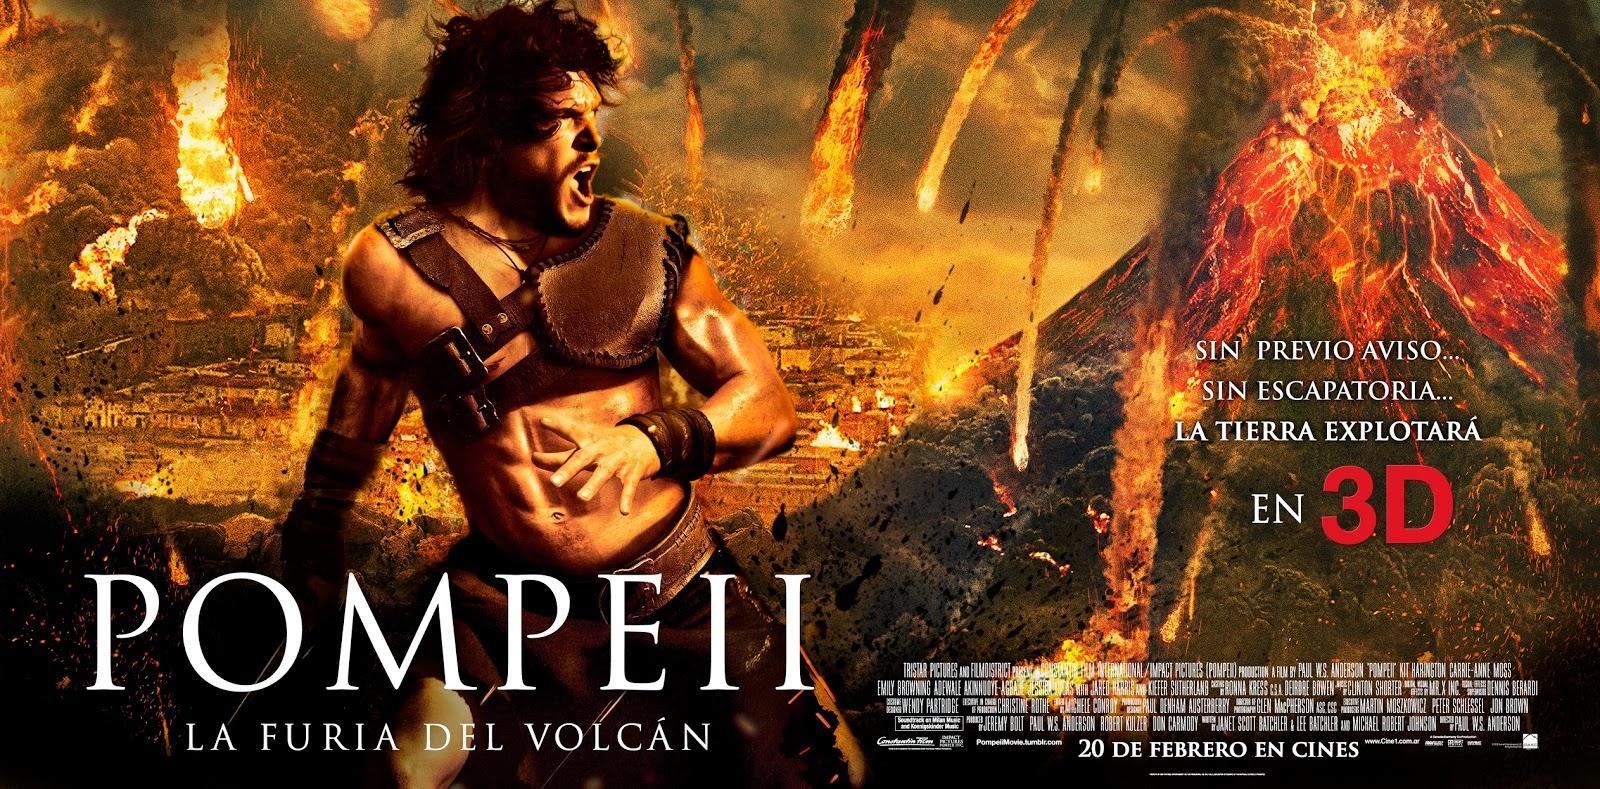 Постер фильма Помпеи | Pompeii